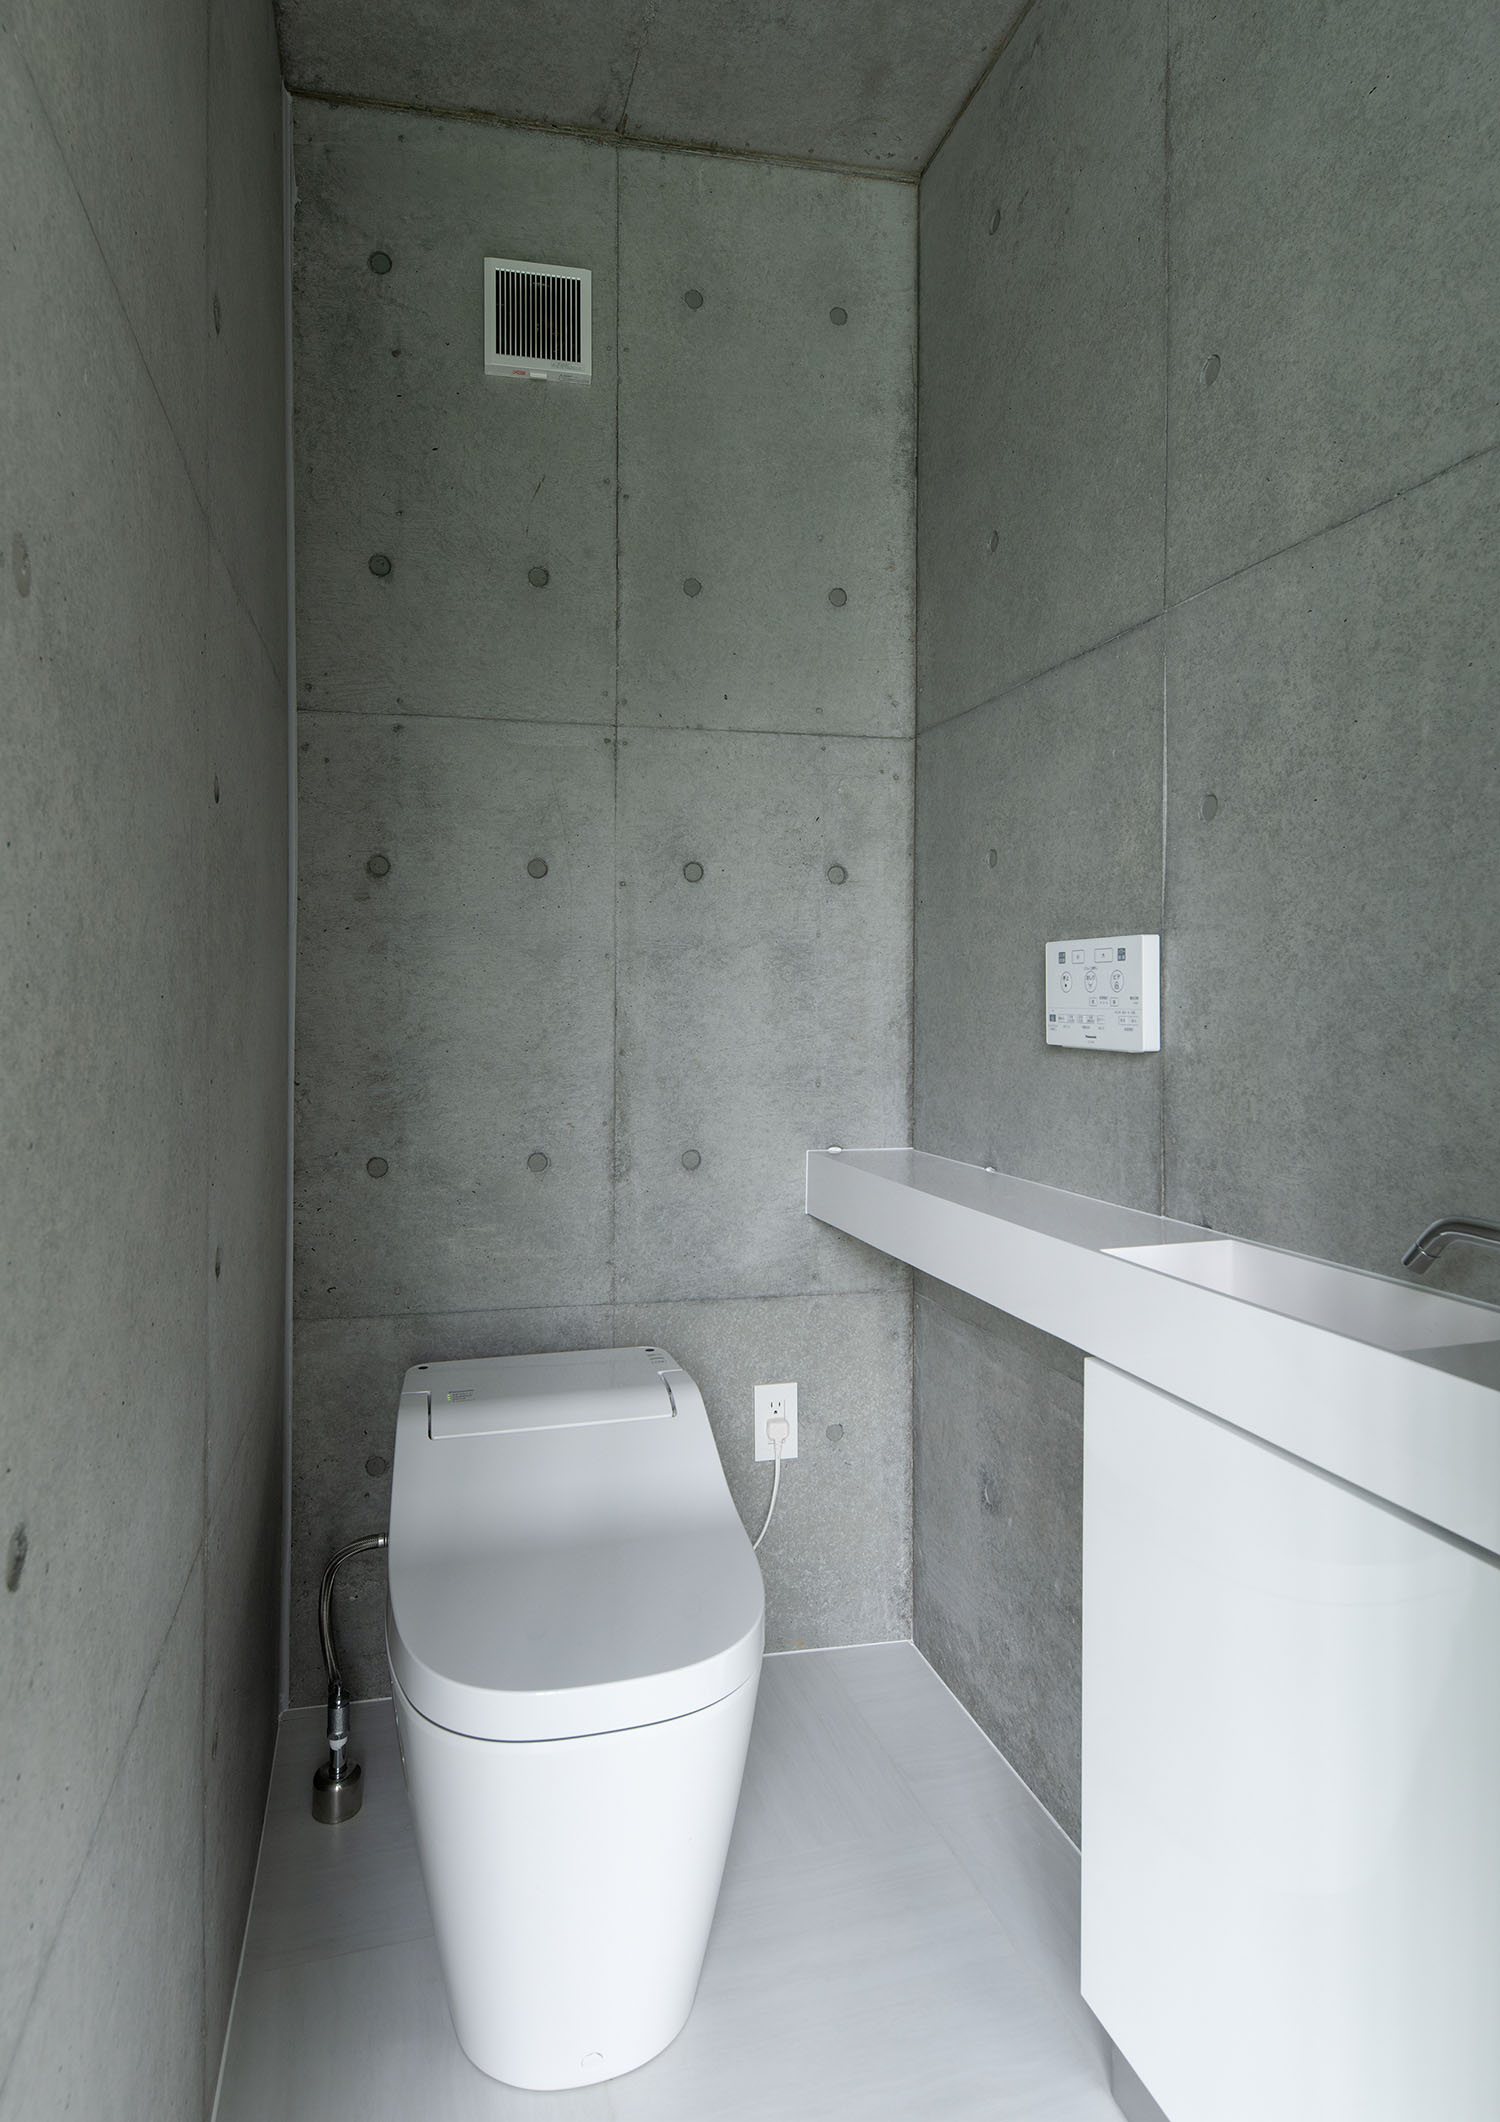 コンクリート壁に囲まれた薄型手洗いのあるトイレ・デザイン住宅